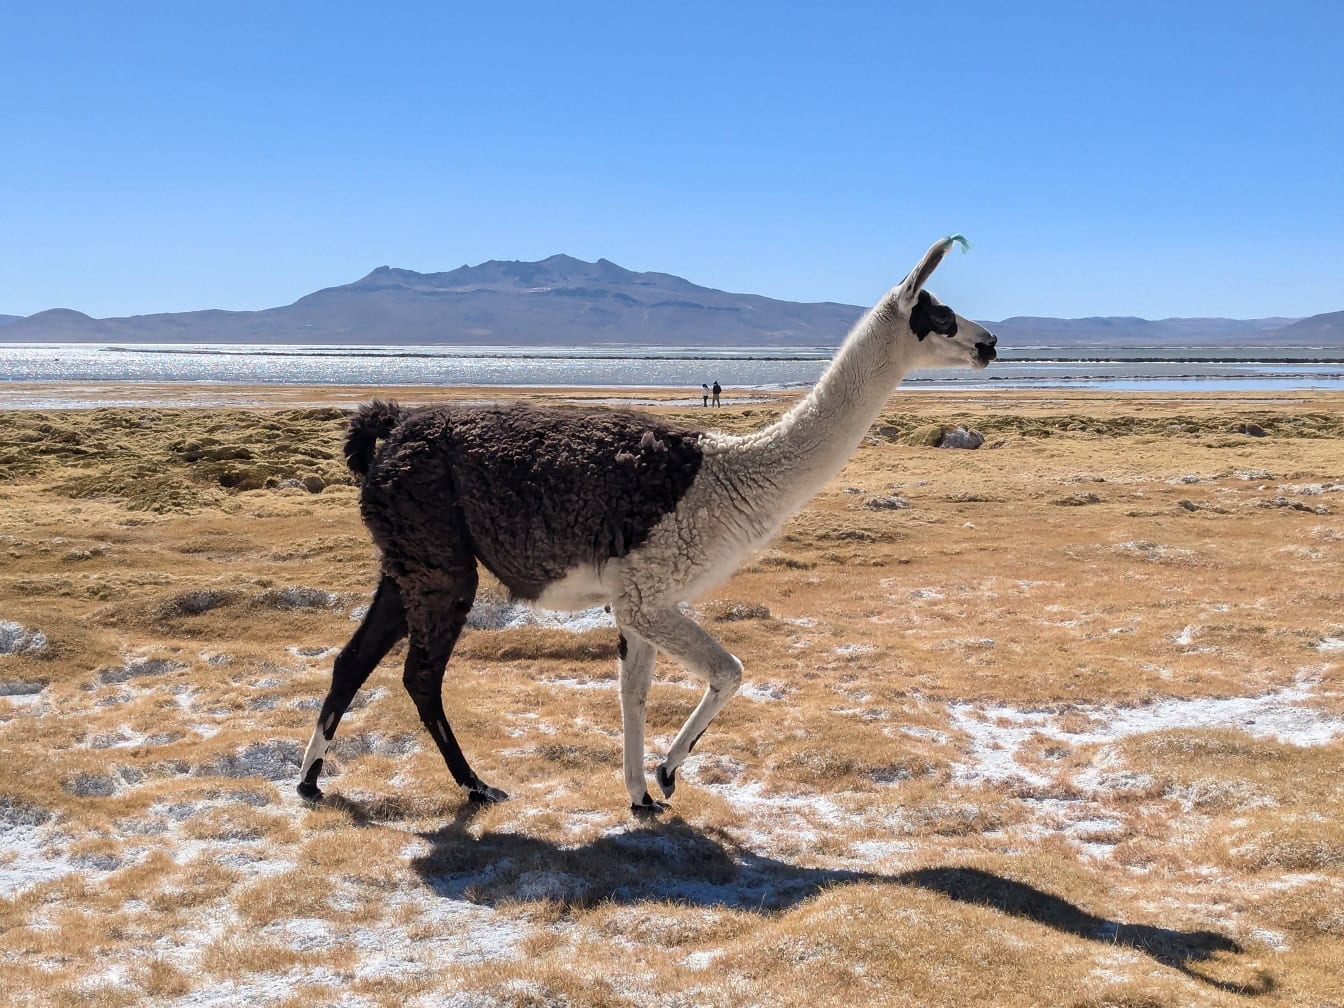 Llama đen trắng đi bộ trên một cánh đồng mặn khô với hồ Salinas ở phía sau trên cao nguyên ở Andes ở Peru